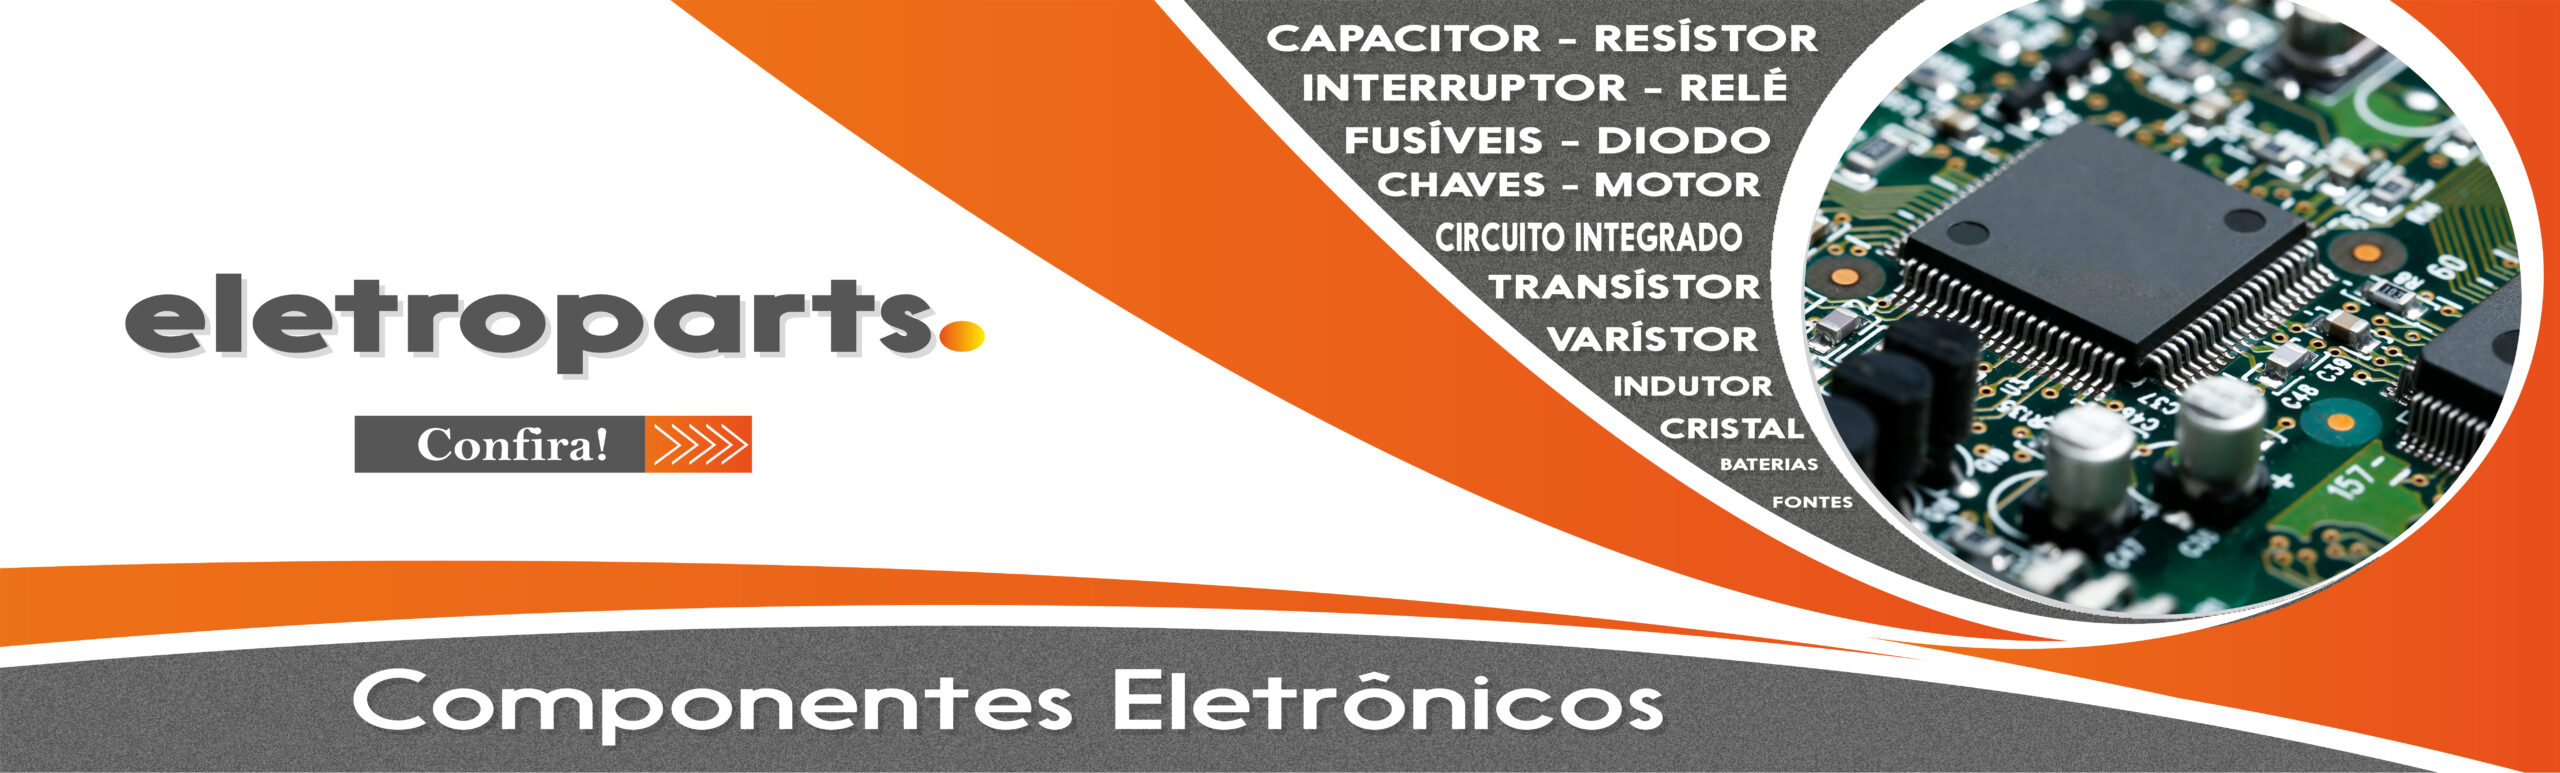 componentes eletronicos